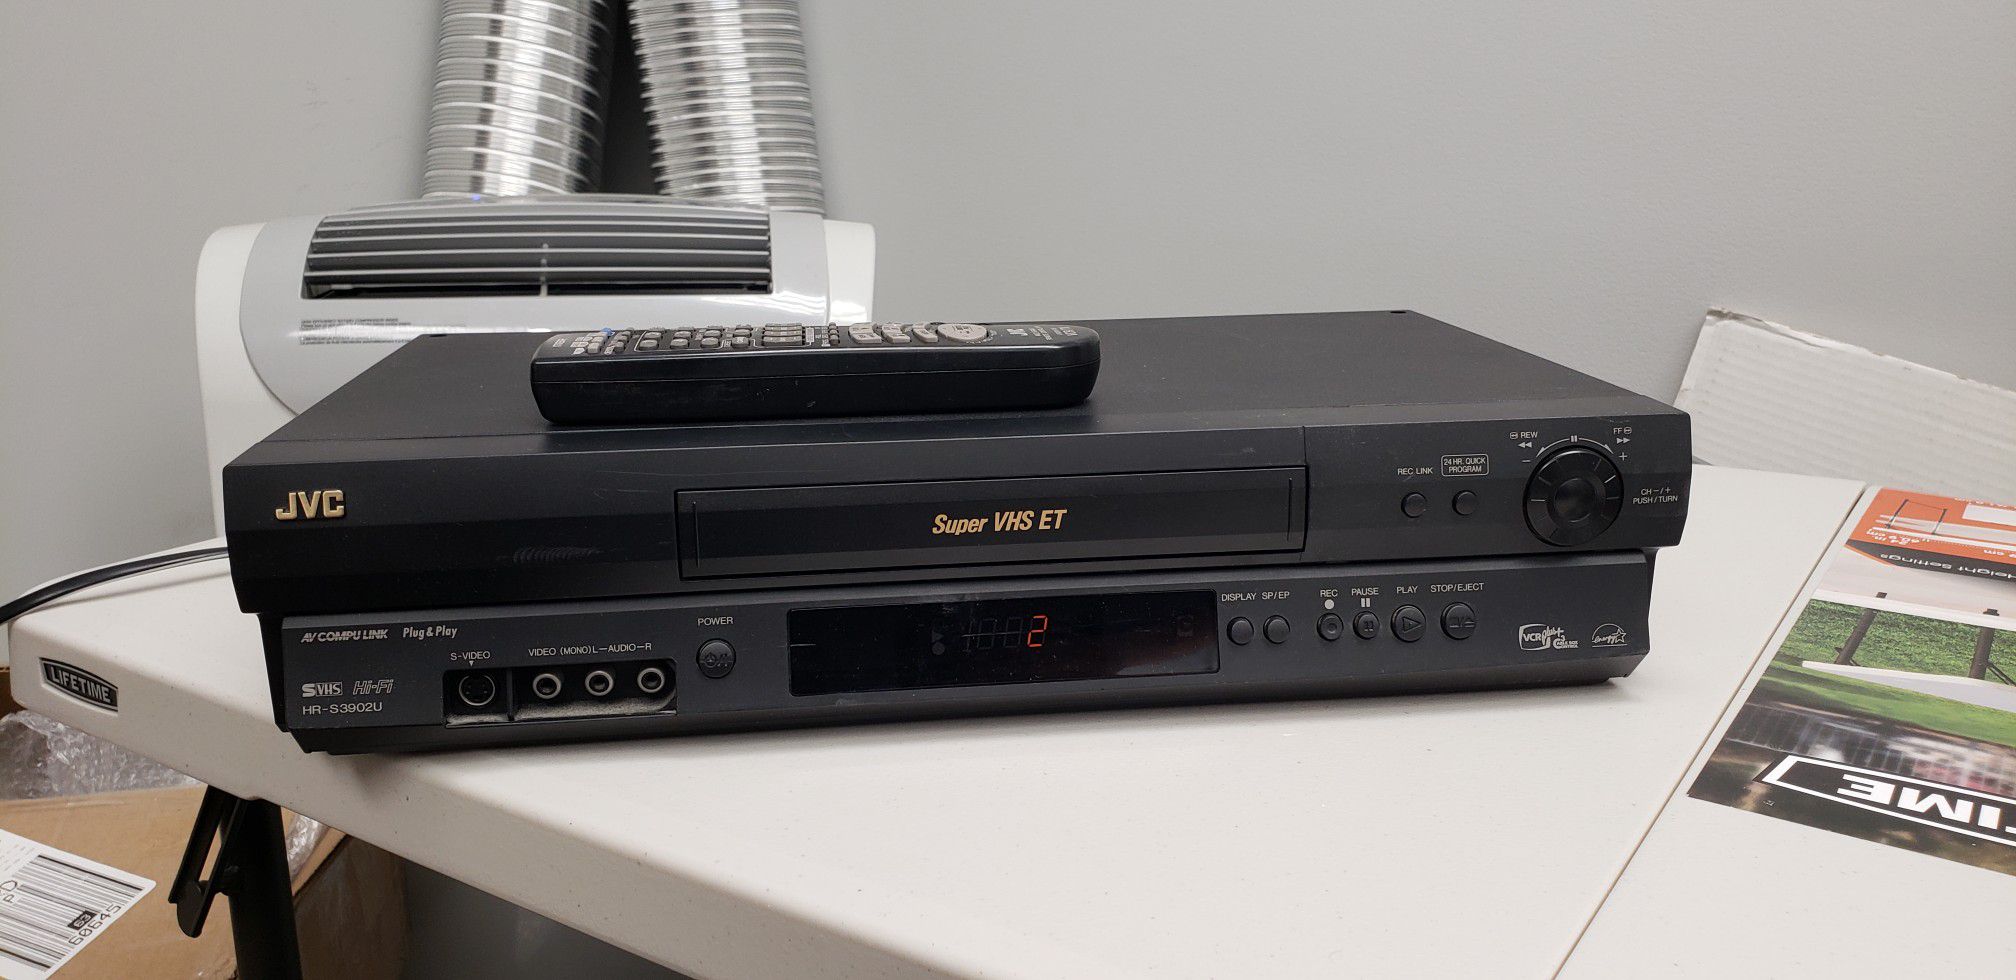 JVC VHS player/recorder jvc hr-s3902u